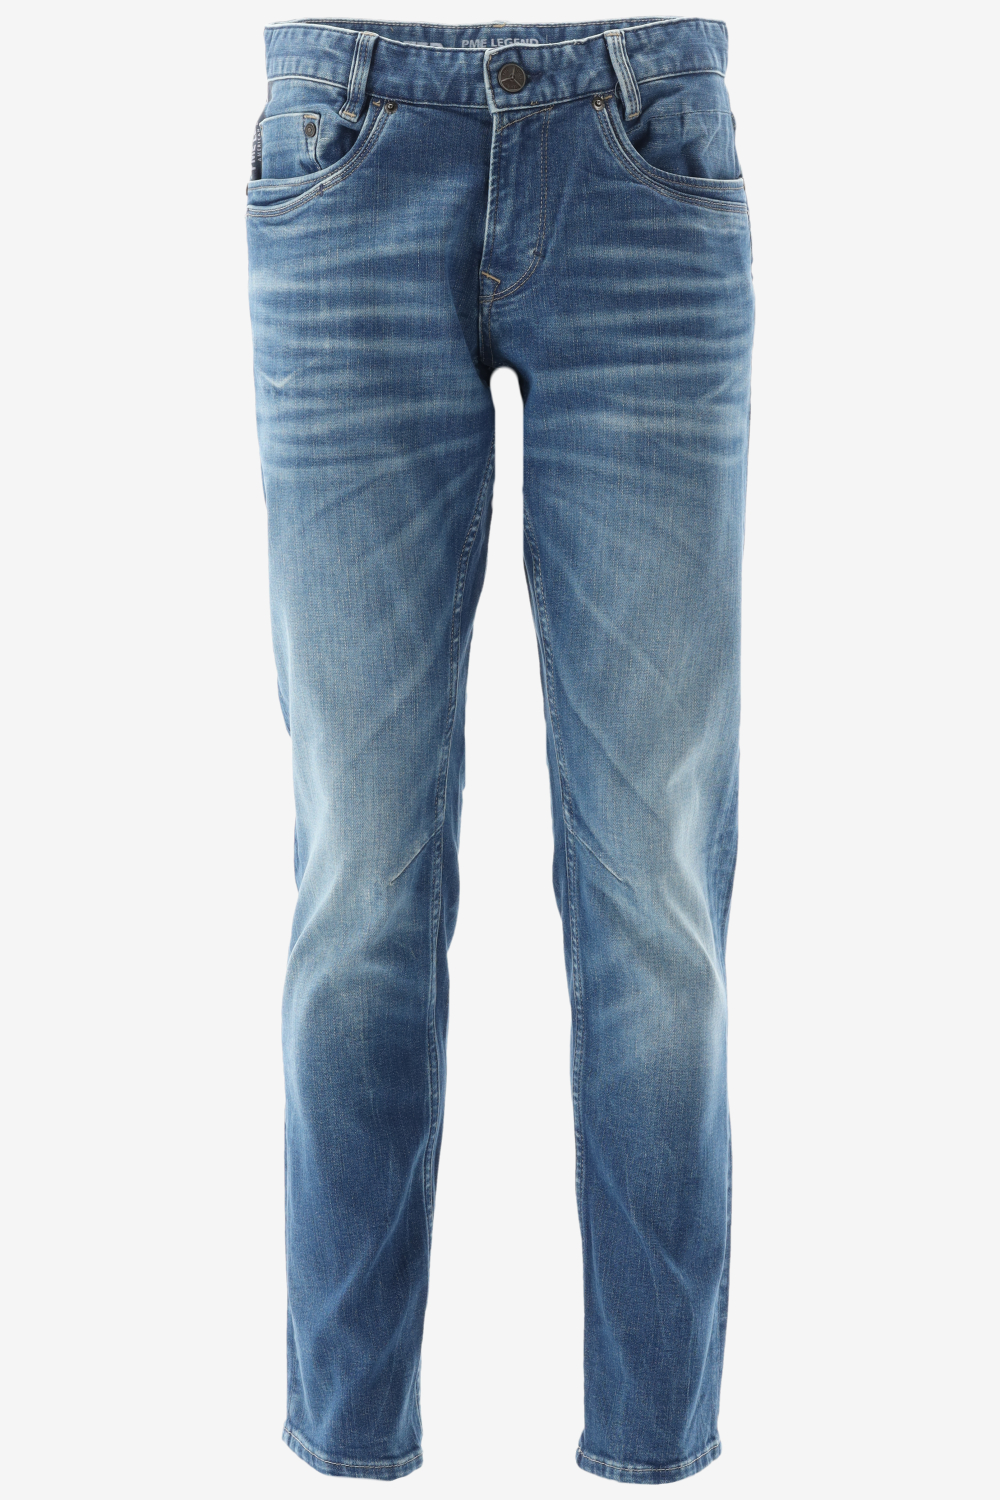 PME Legend - Skymaster Jeans Blauw - W 34 - L 30 - Regular-fit